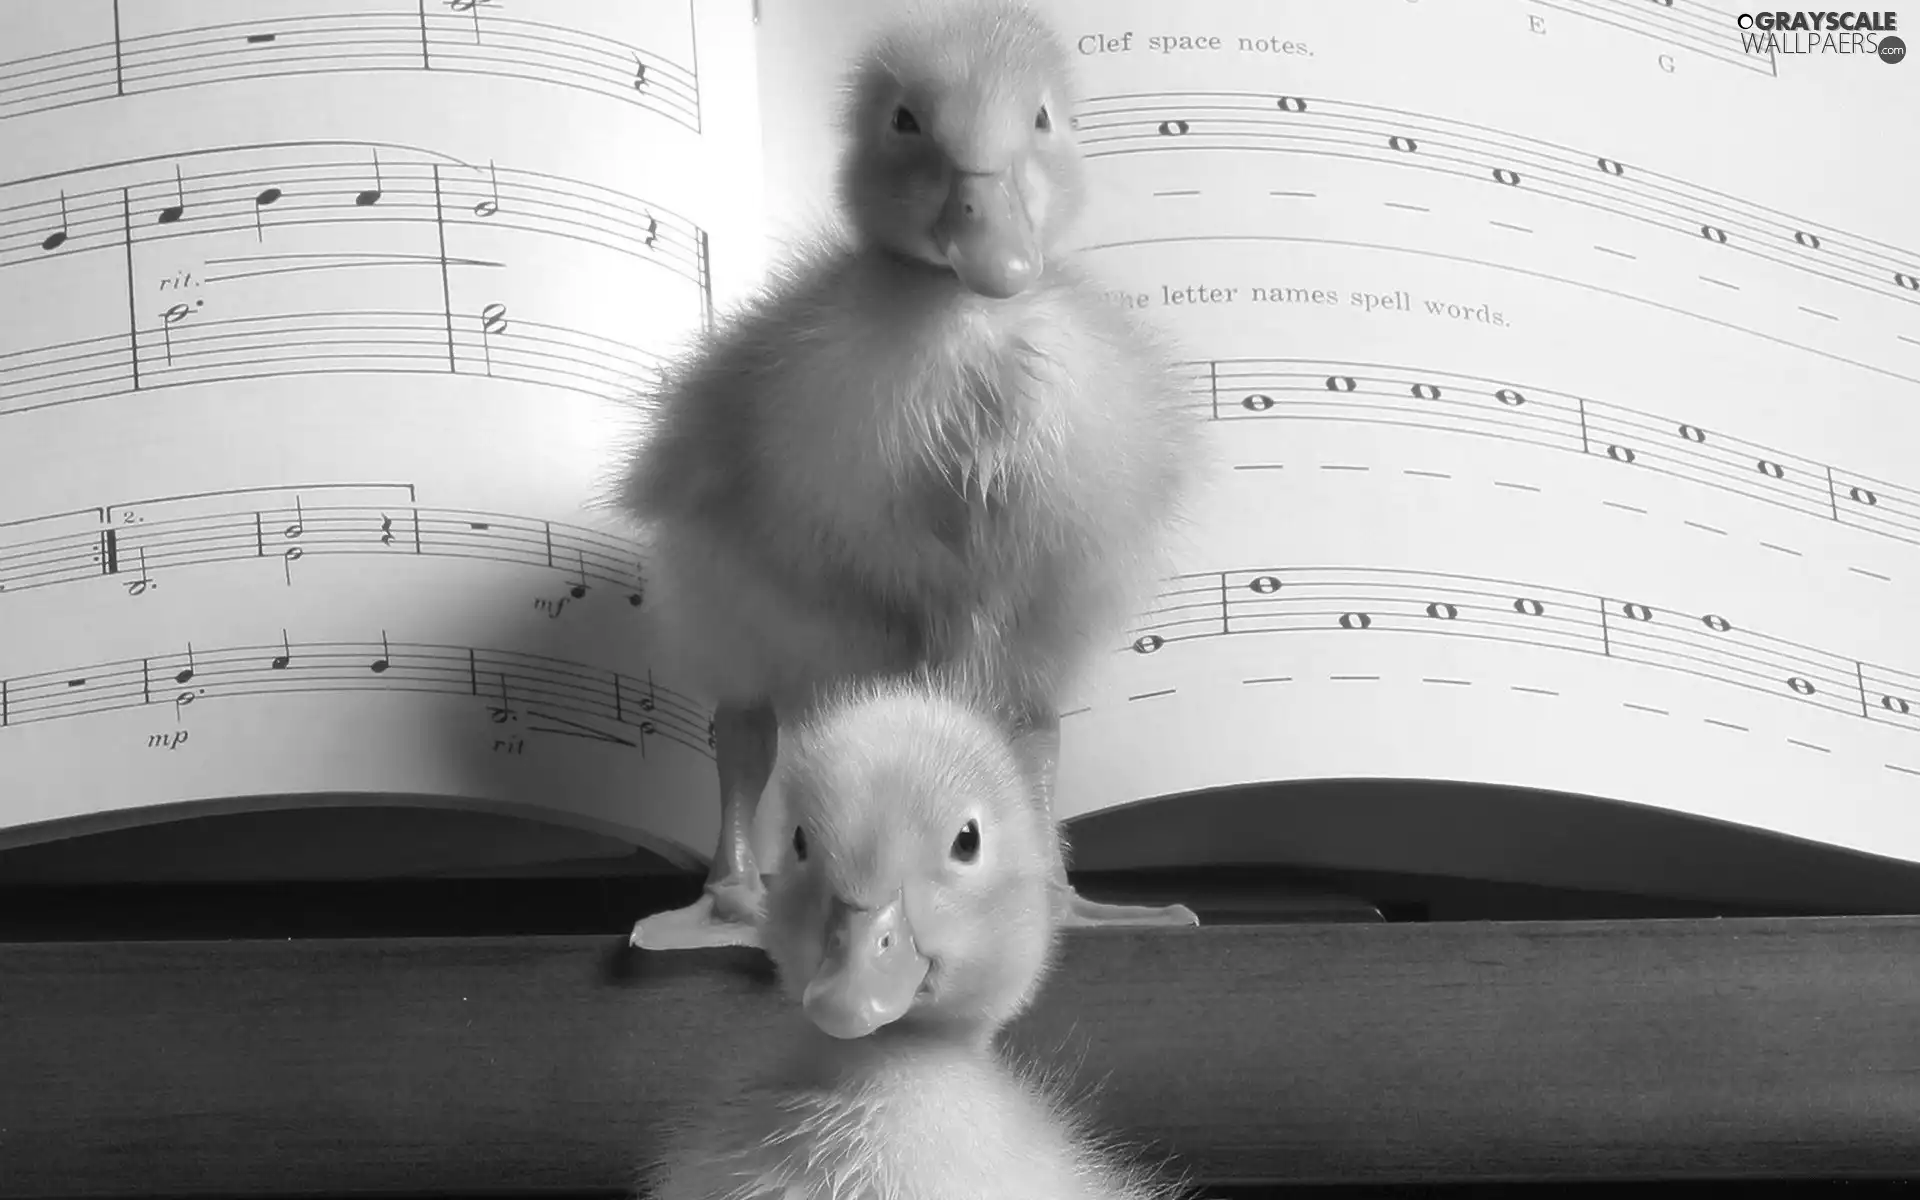 ducks, Tunes